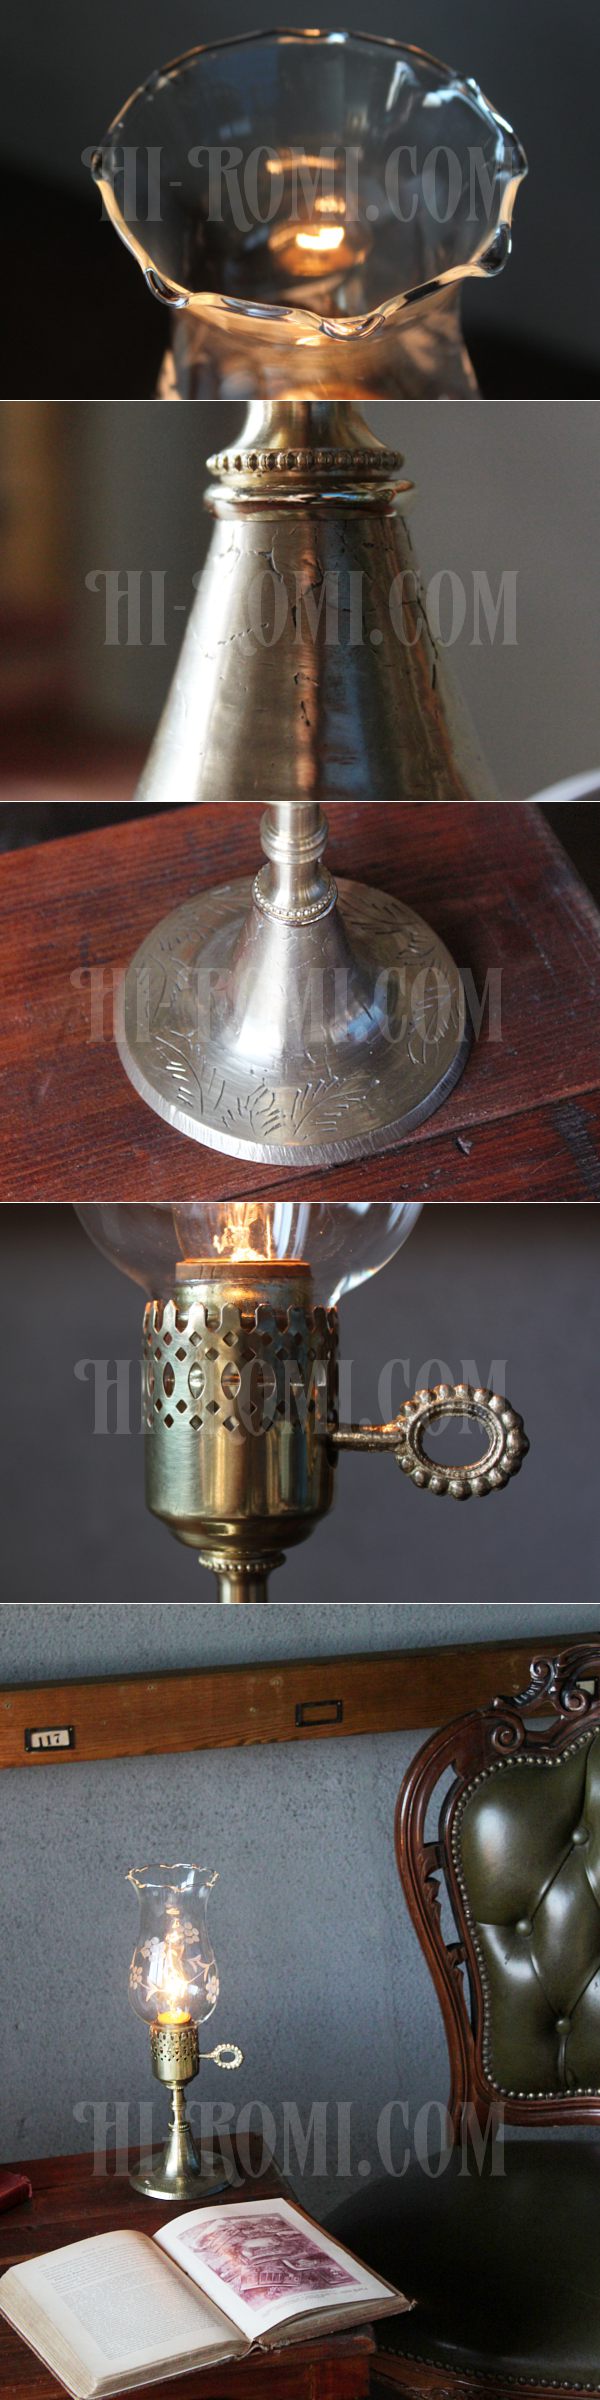 ヴィンテージホブネイル真鍮製鍵スイッチ付きガラス製フリルチムニーのテーブルランプ/アンティークハリケーンライト真鍮照明